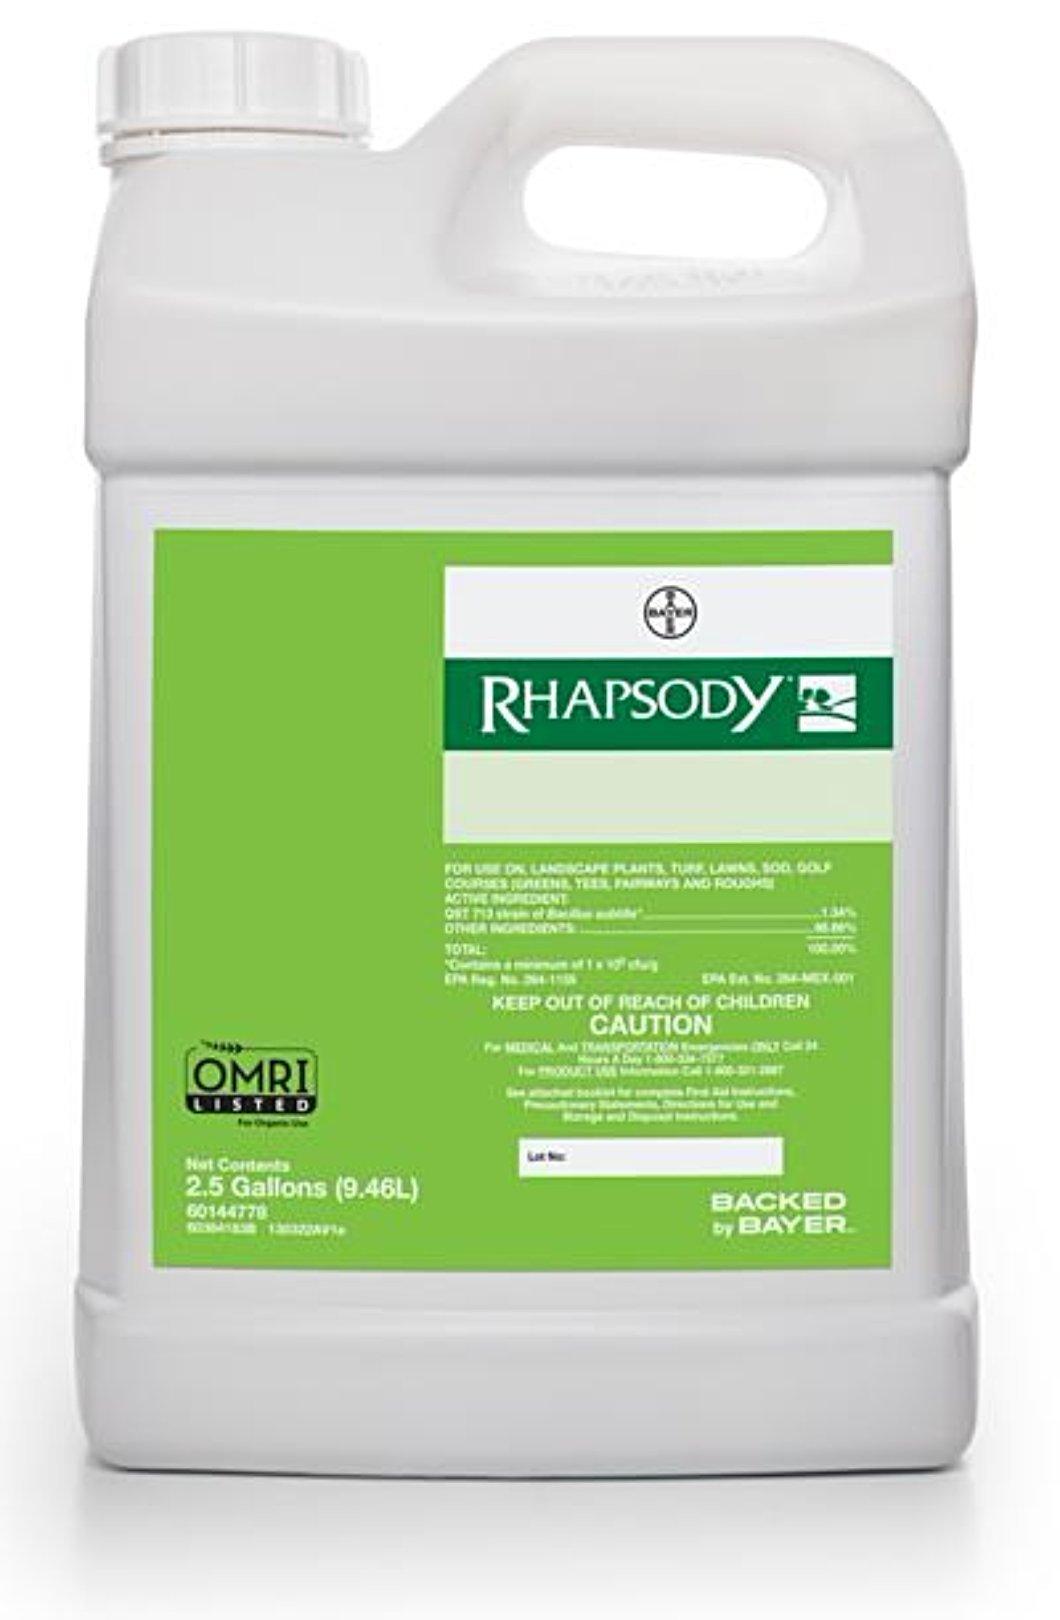 Fungicide - Rhapsody Bio-Fungicide